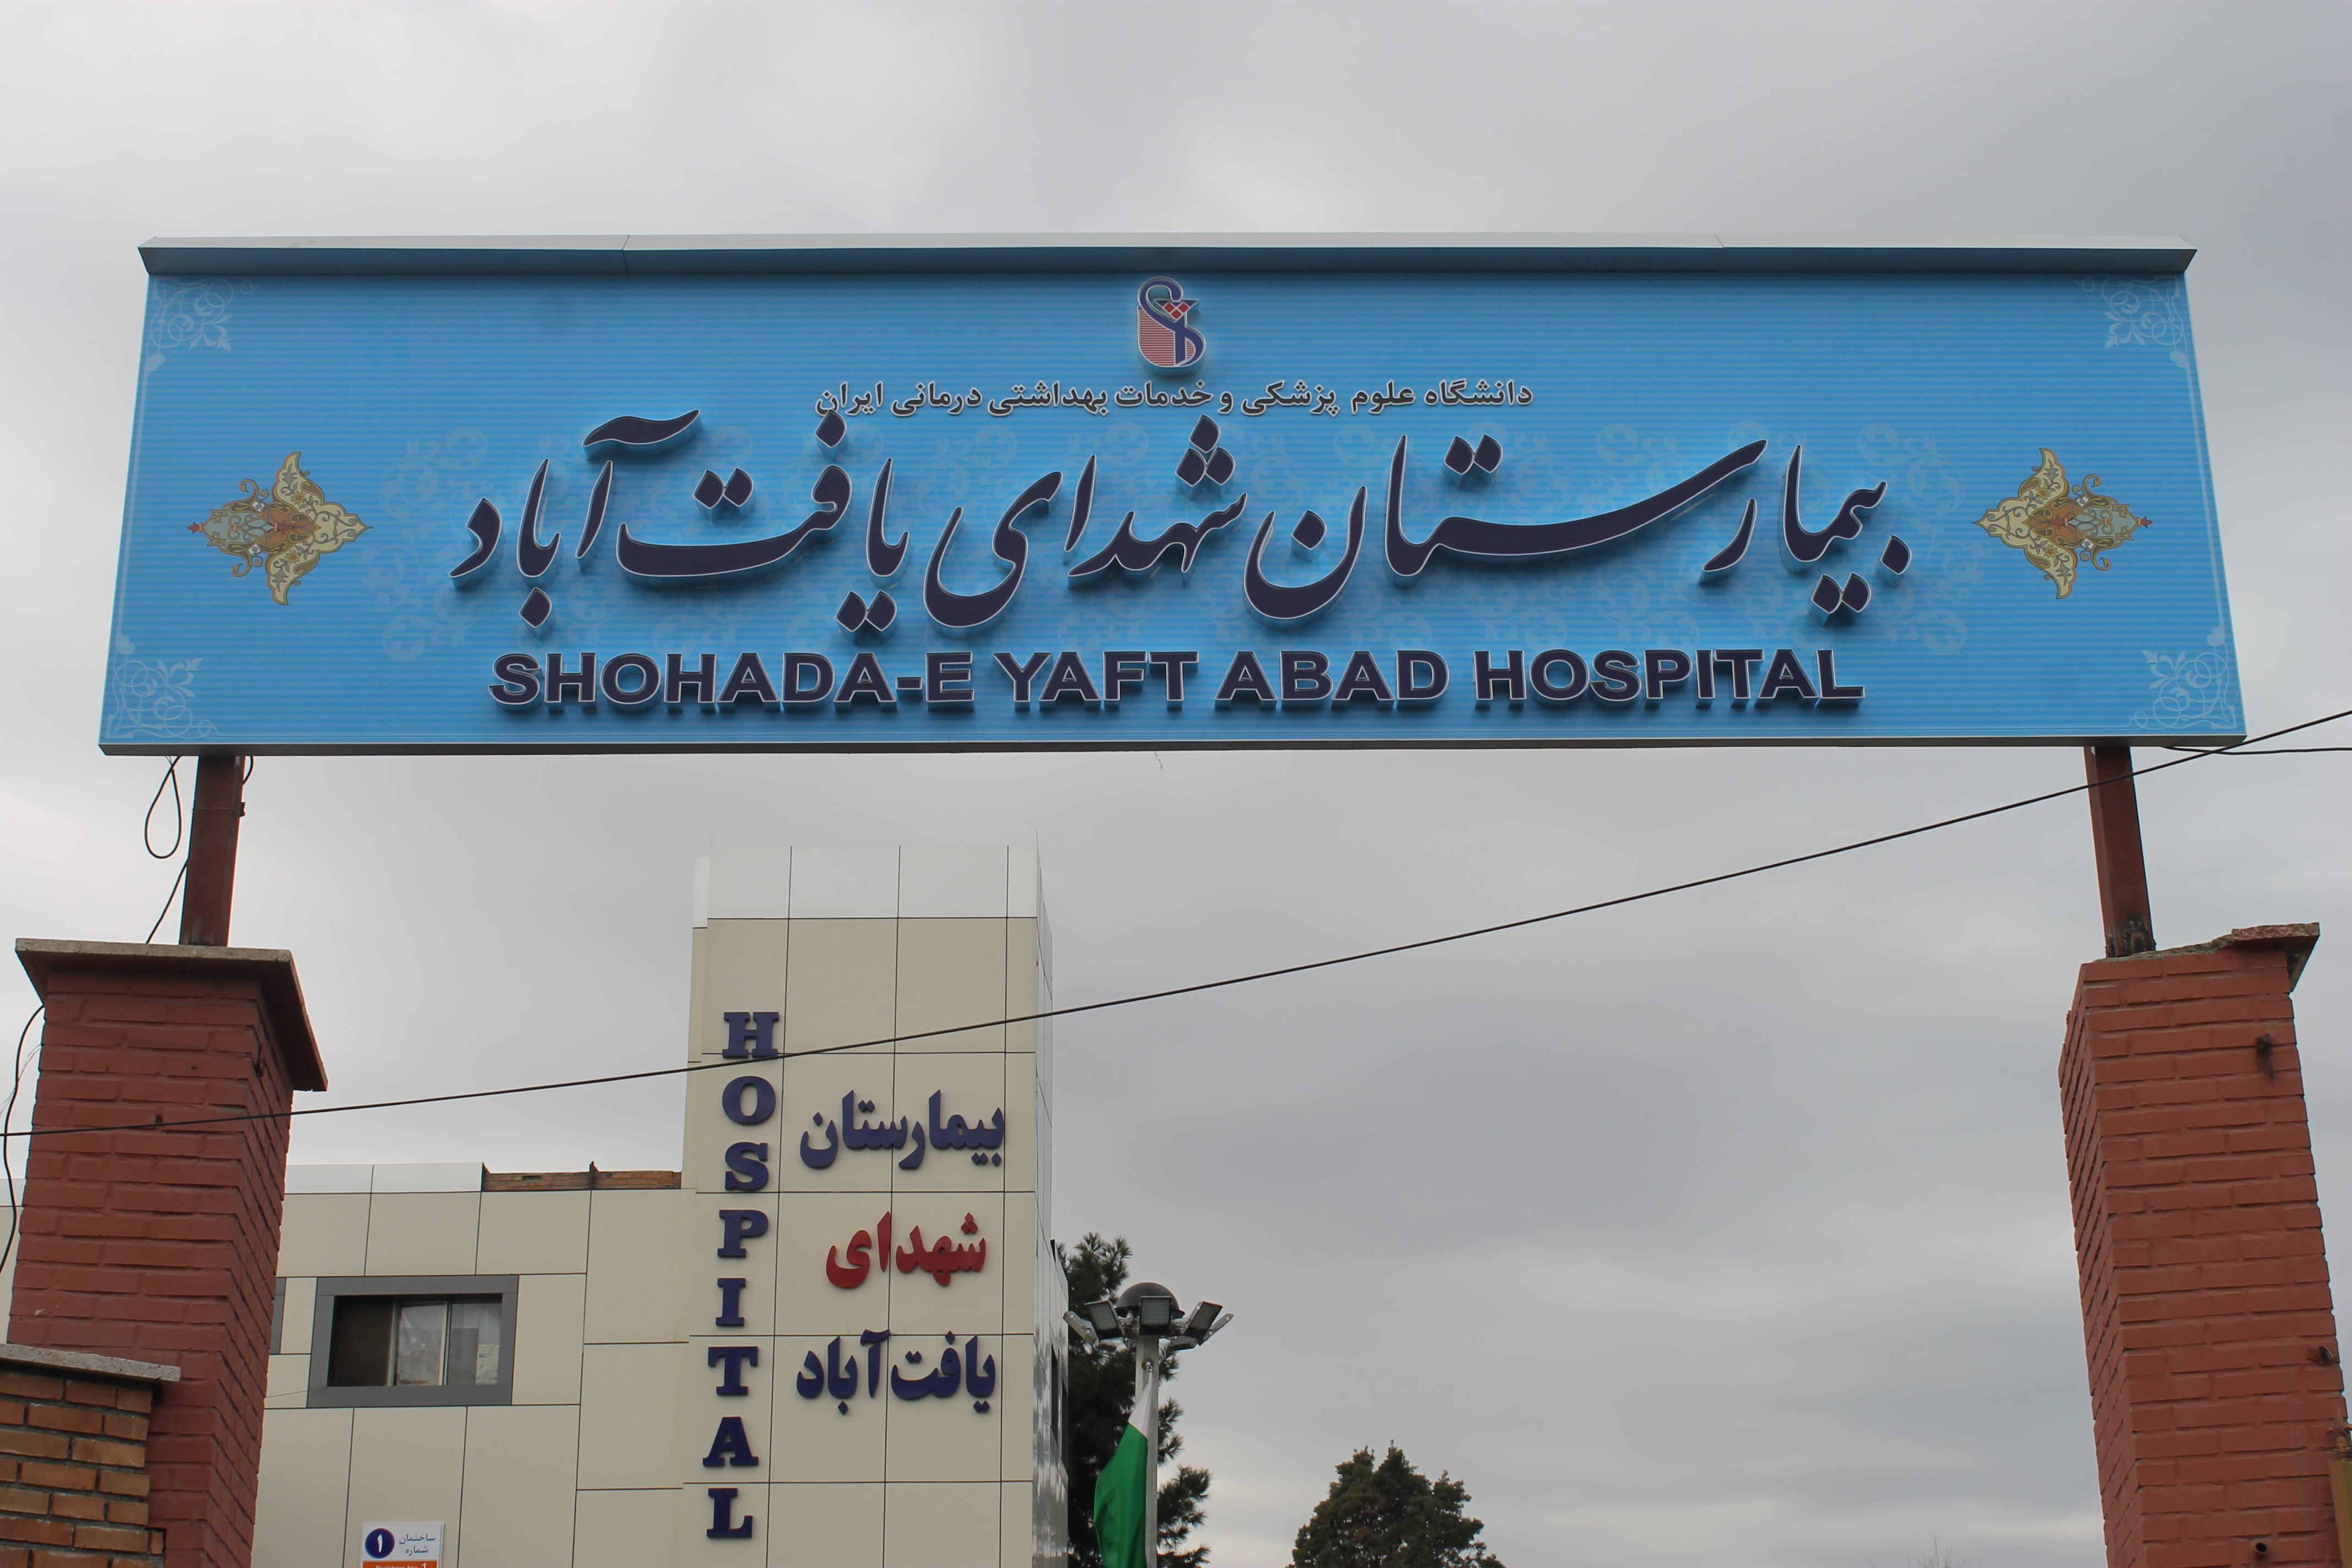 انتقال-یک-بیمار-مشکوک-به-کرونا-به-بیمارستان-شهدای-یافت-آباد